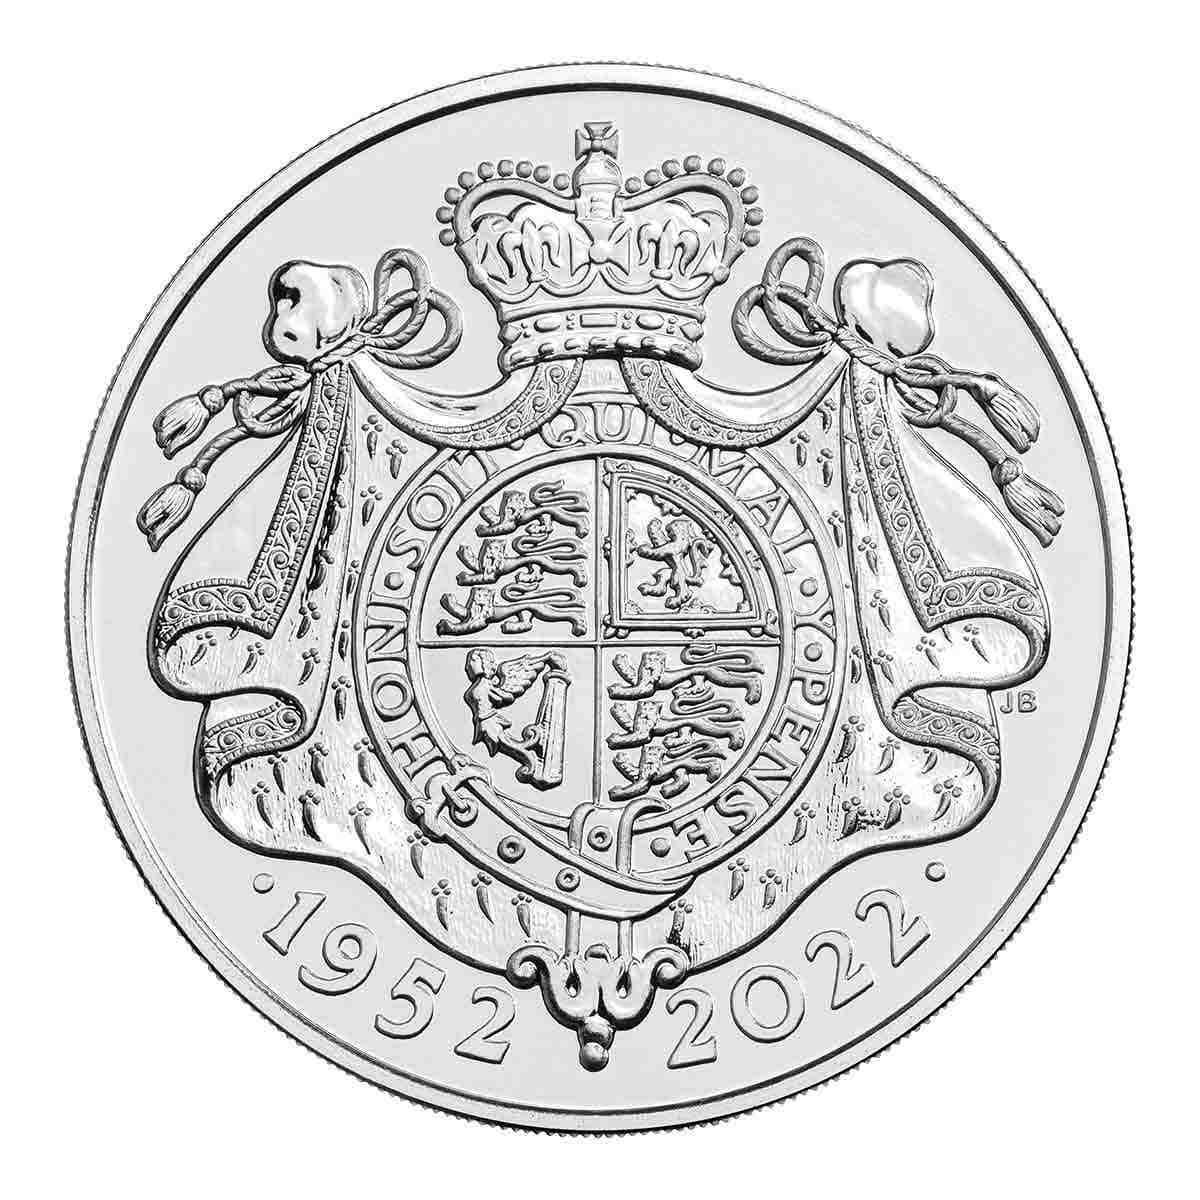 Queen Elizabeth II's Platinum Jubilee 2022 £5 Cupro-Nickel Brilliant Uncirculated Coin